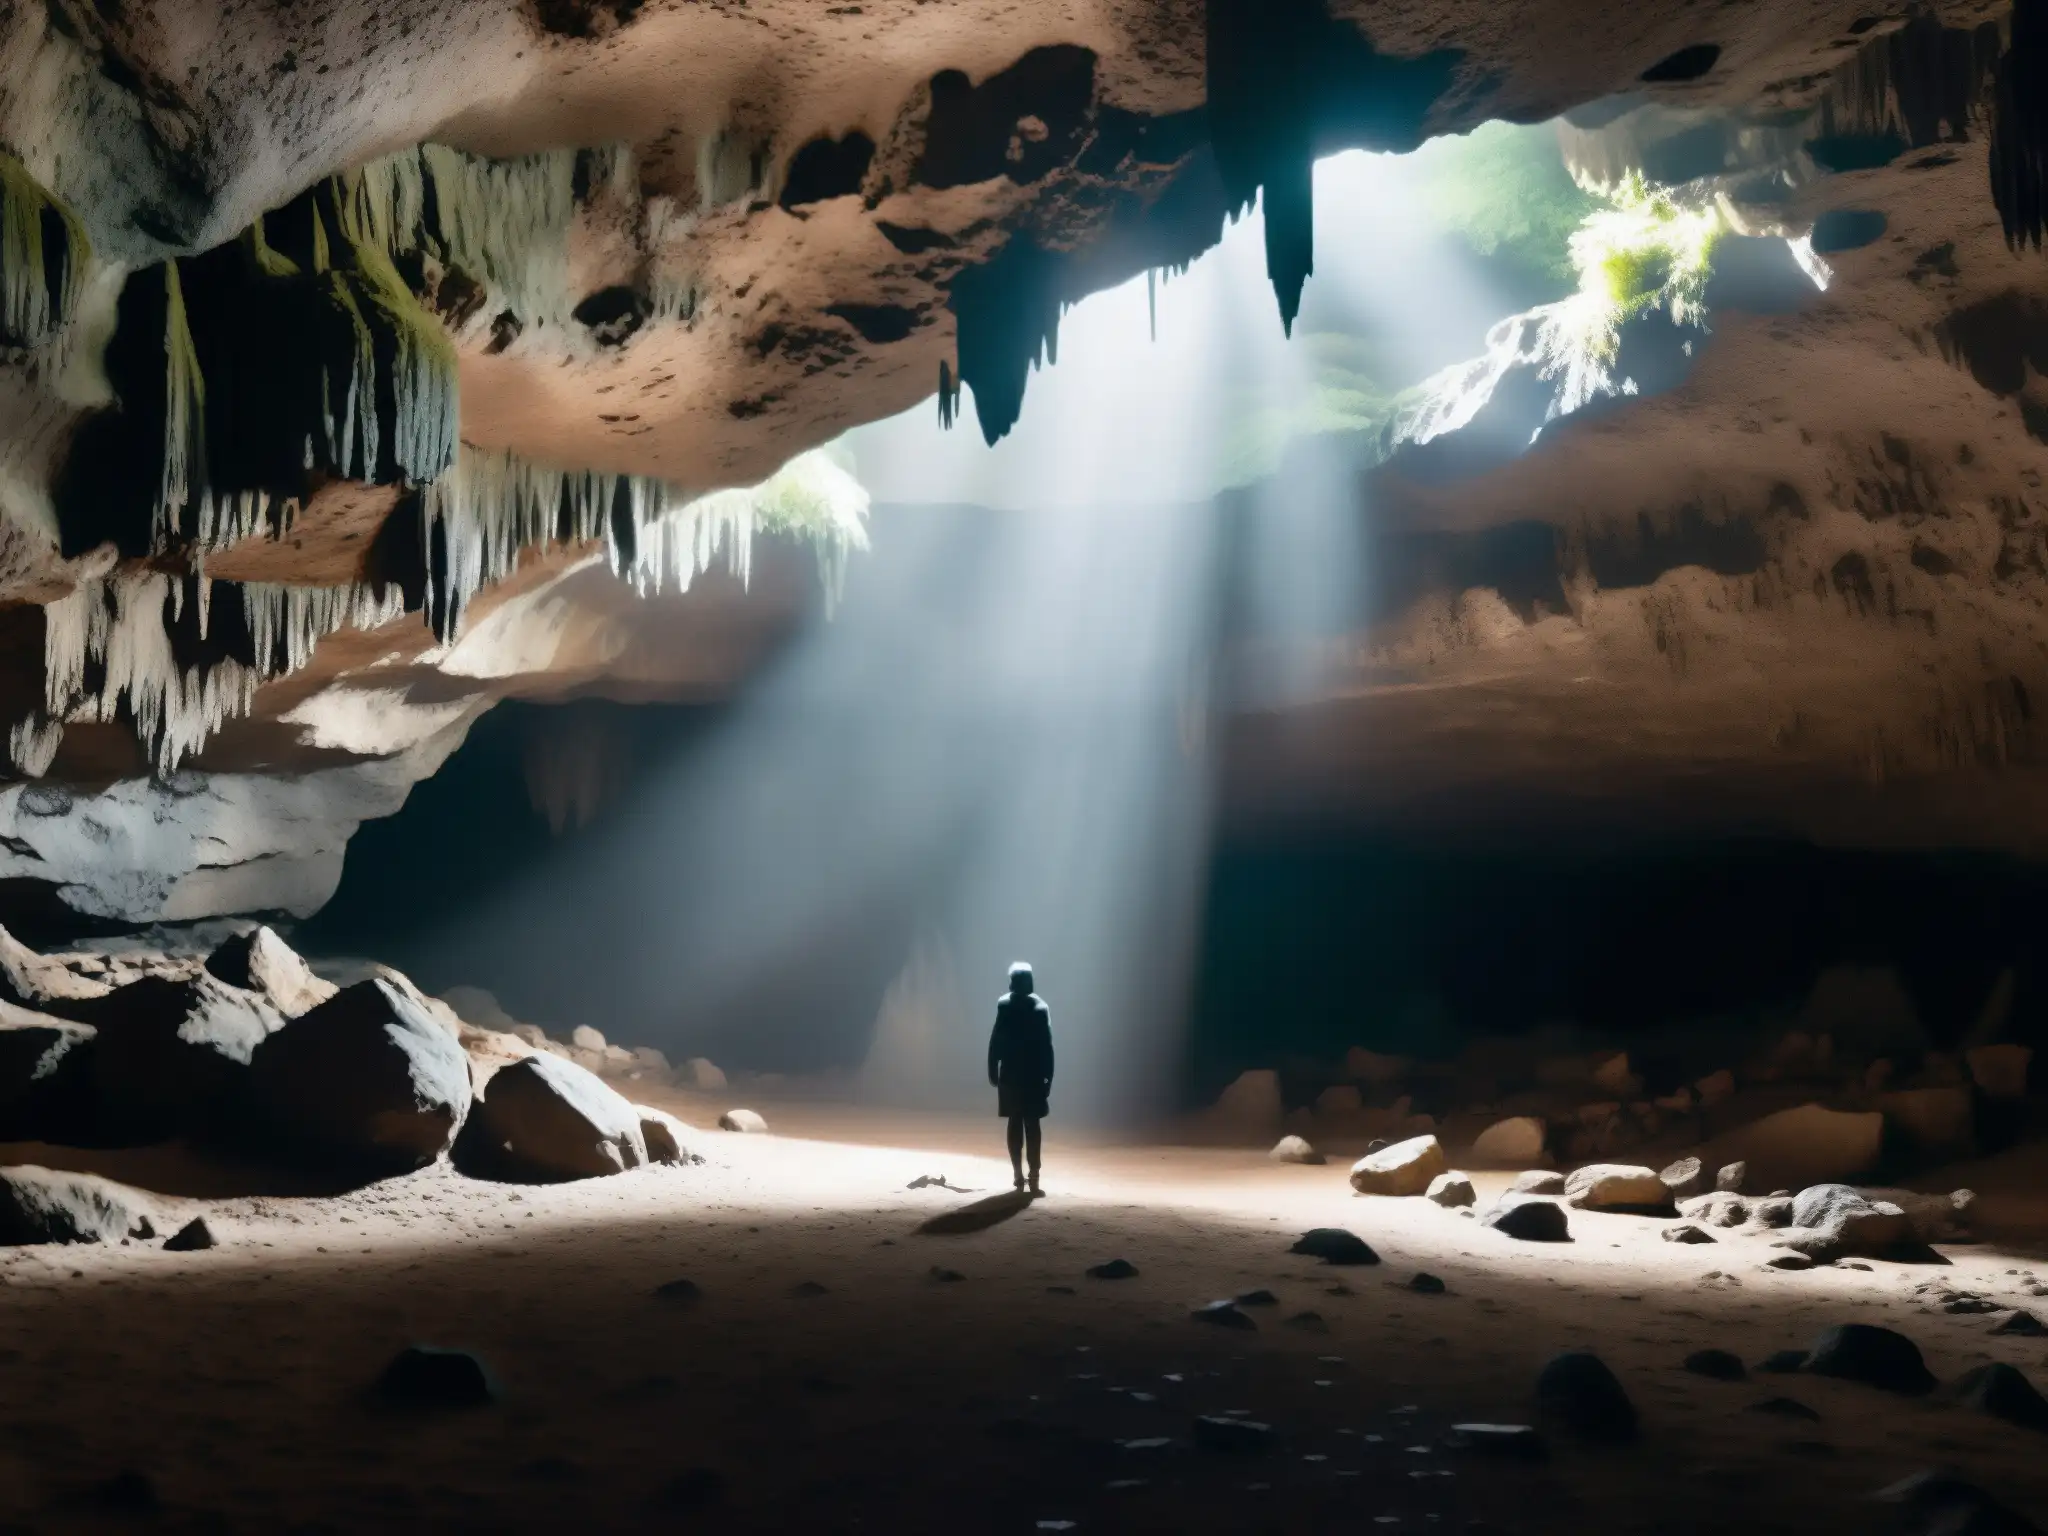 La misteriosa caverna subterránea, con sombras inquietantes, estalactitas y una figura enigmática, rodeada de un bosque denso